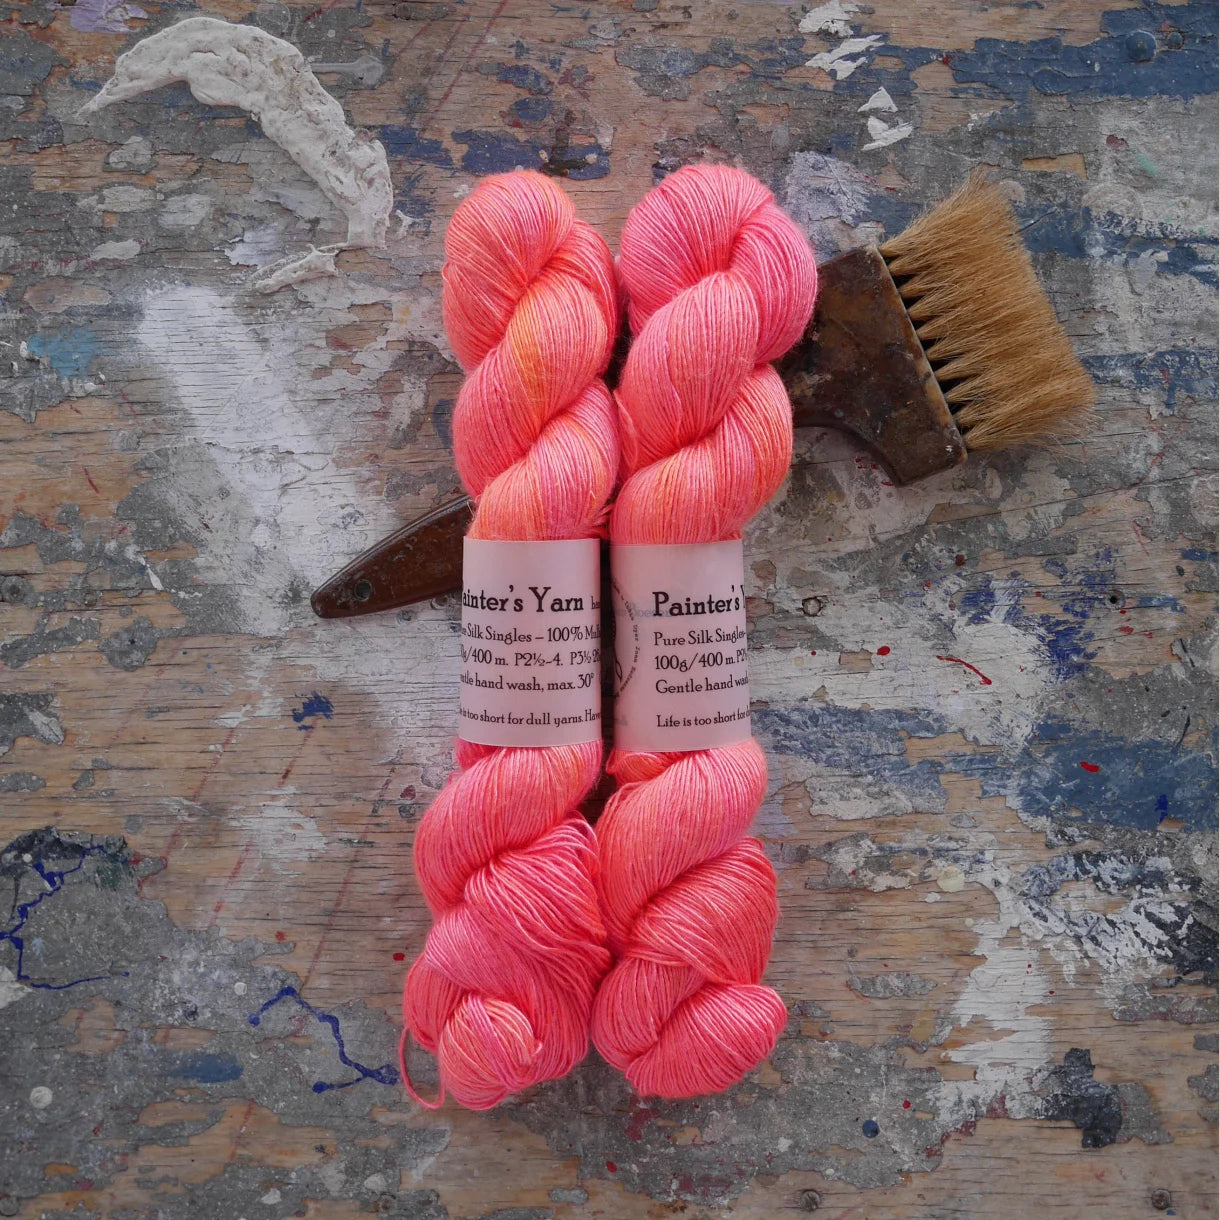 Pure Silk Singles - håndfarvet fra Painter's Yarn